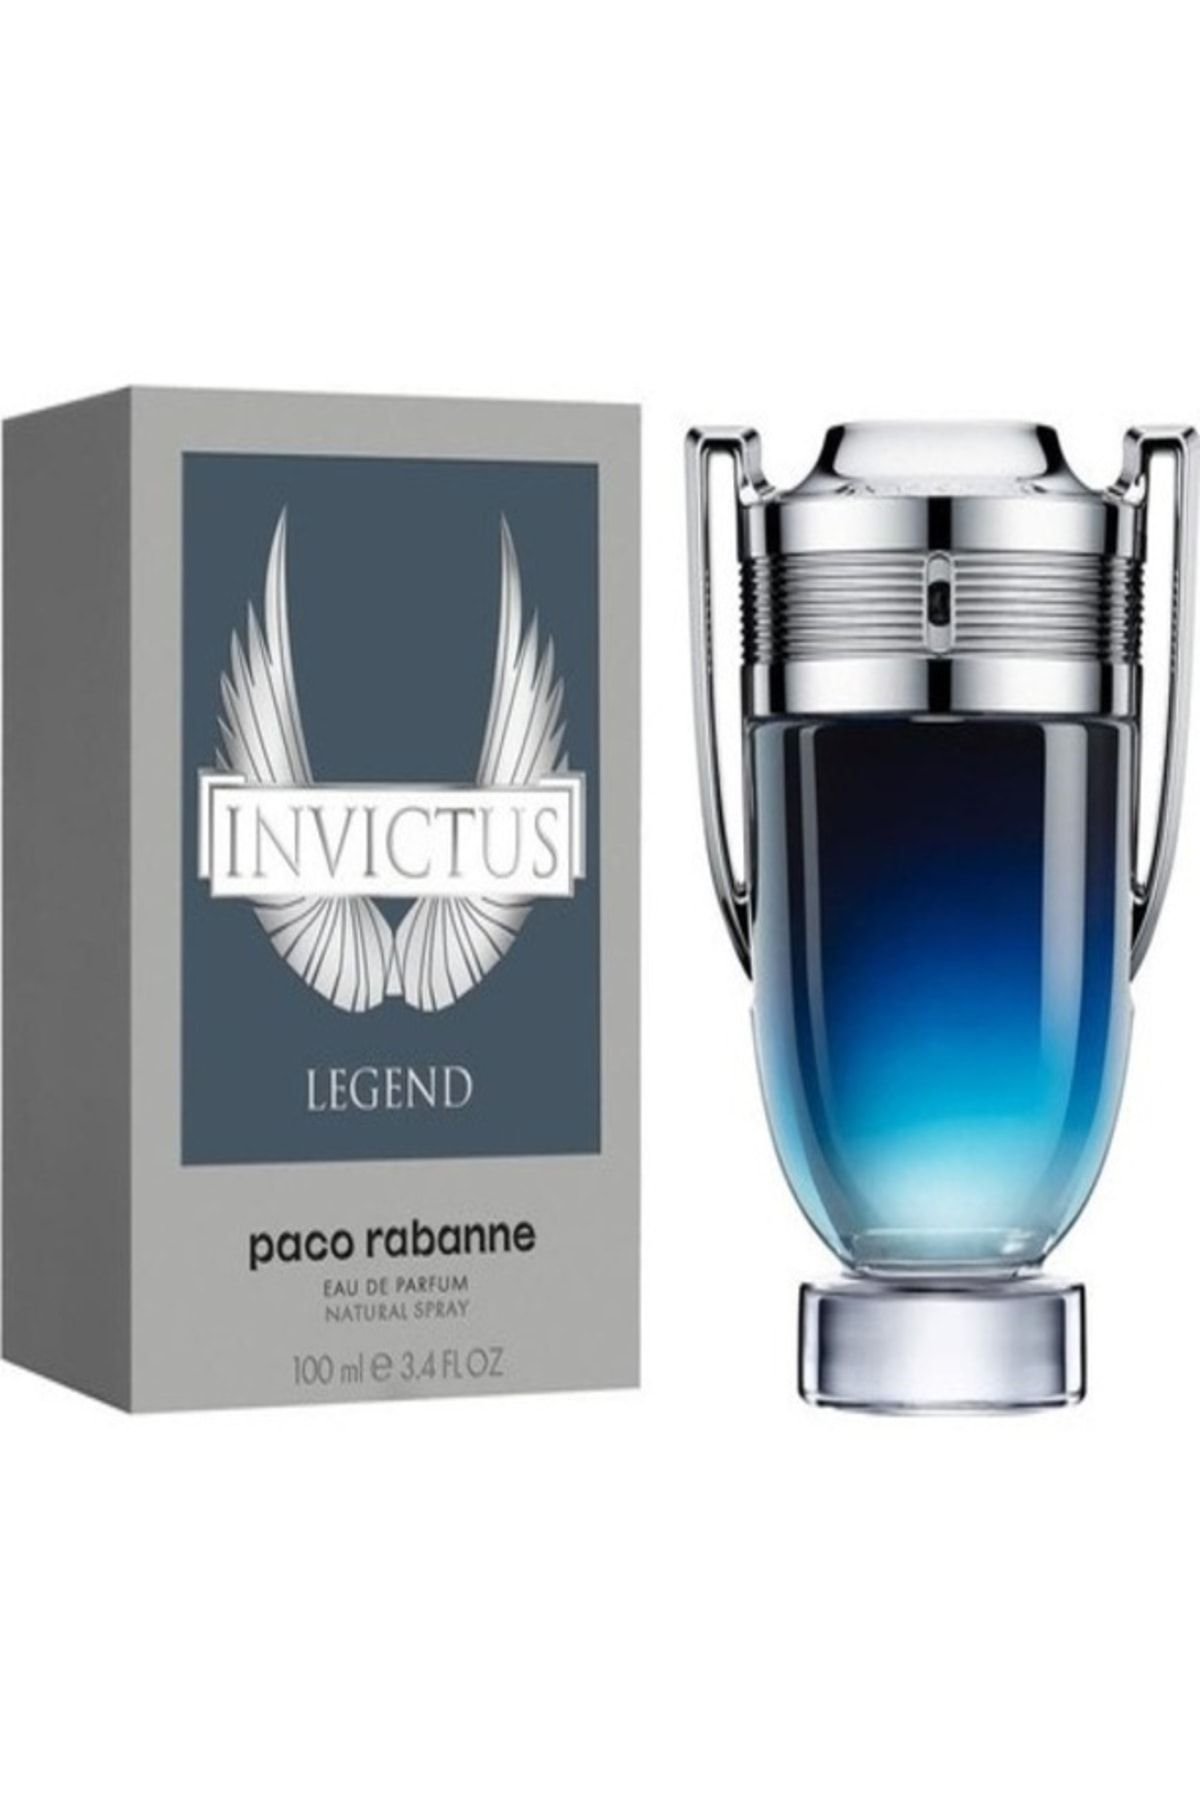 PACO ROMANO Invictus Legend Erkek Parfüm Edp 100 Ml Fiyatı, Yorumları ...